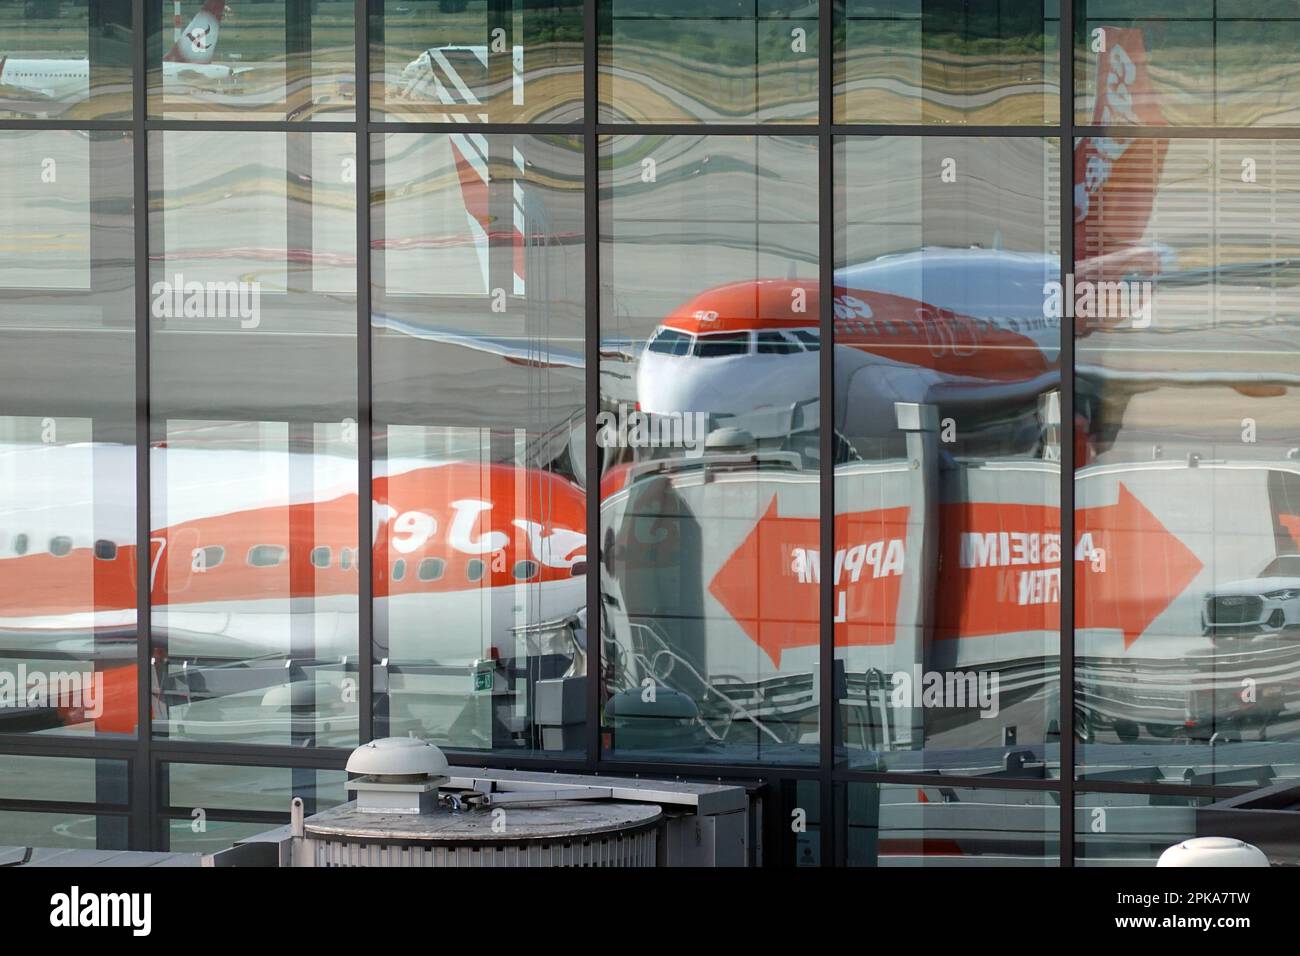 13.06.2022, Alemania, Brandeburgo, Schoenefeld - Avión de easyJet reflejado en la fachada de cristal de la terminal en el aeropuerto de BER. 00S220613D311CAROEX. Foto de stock